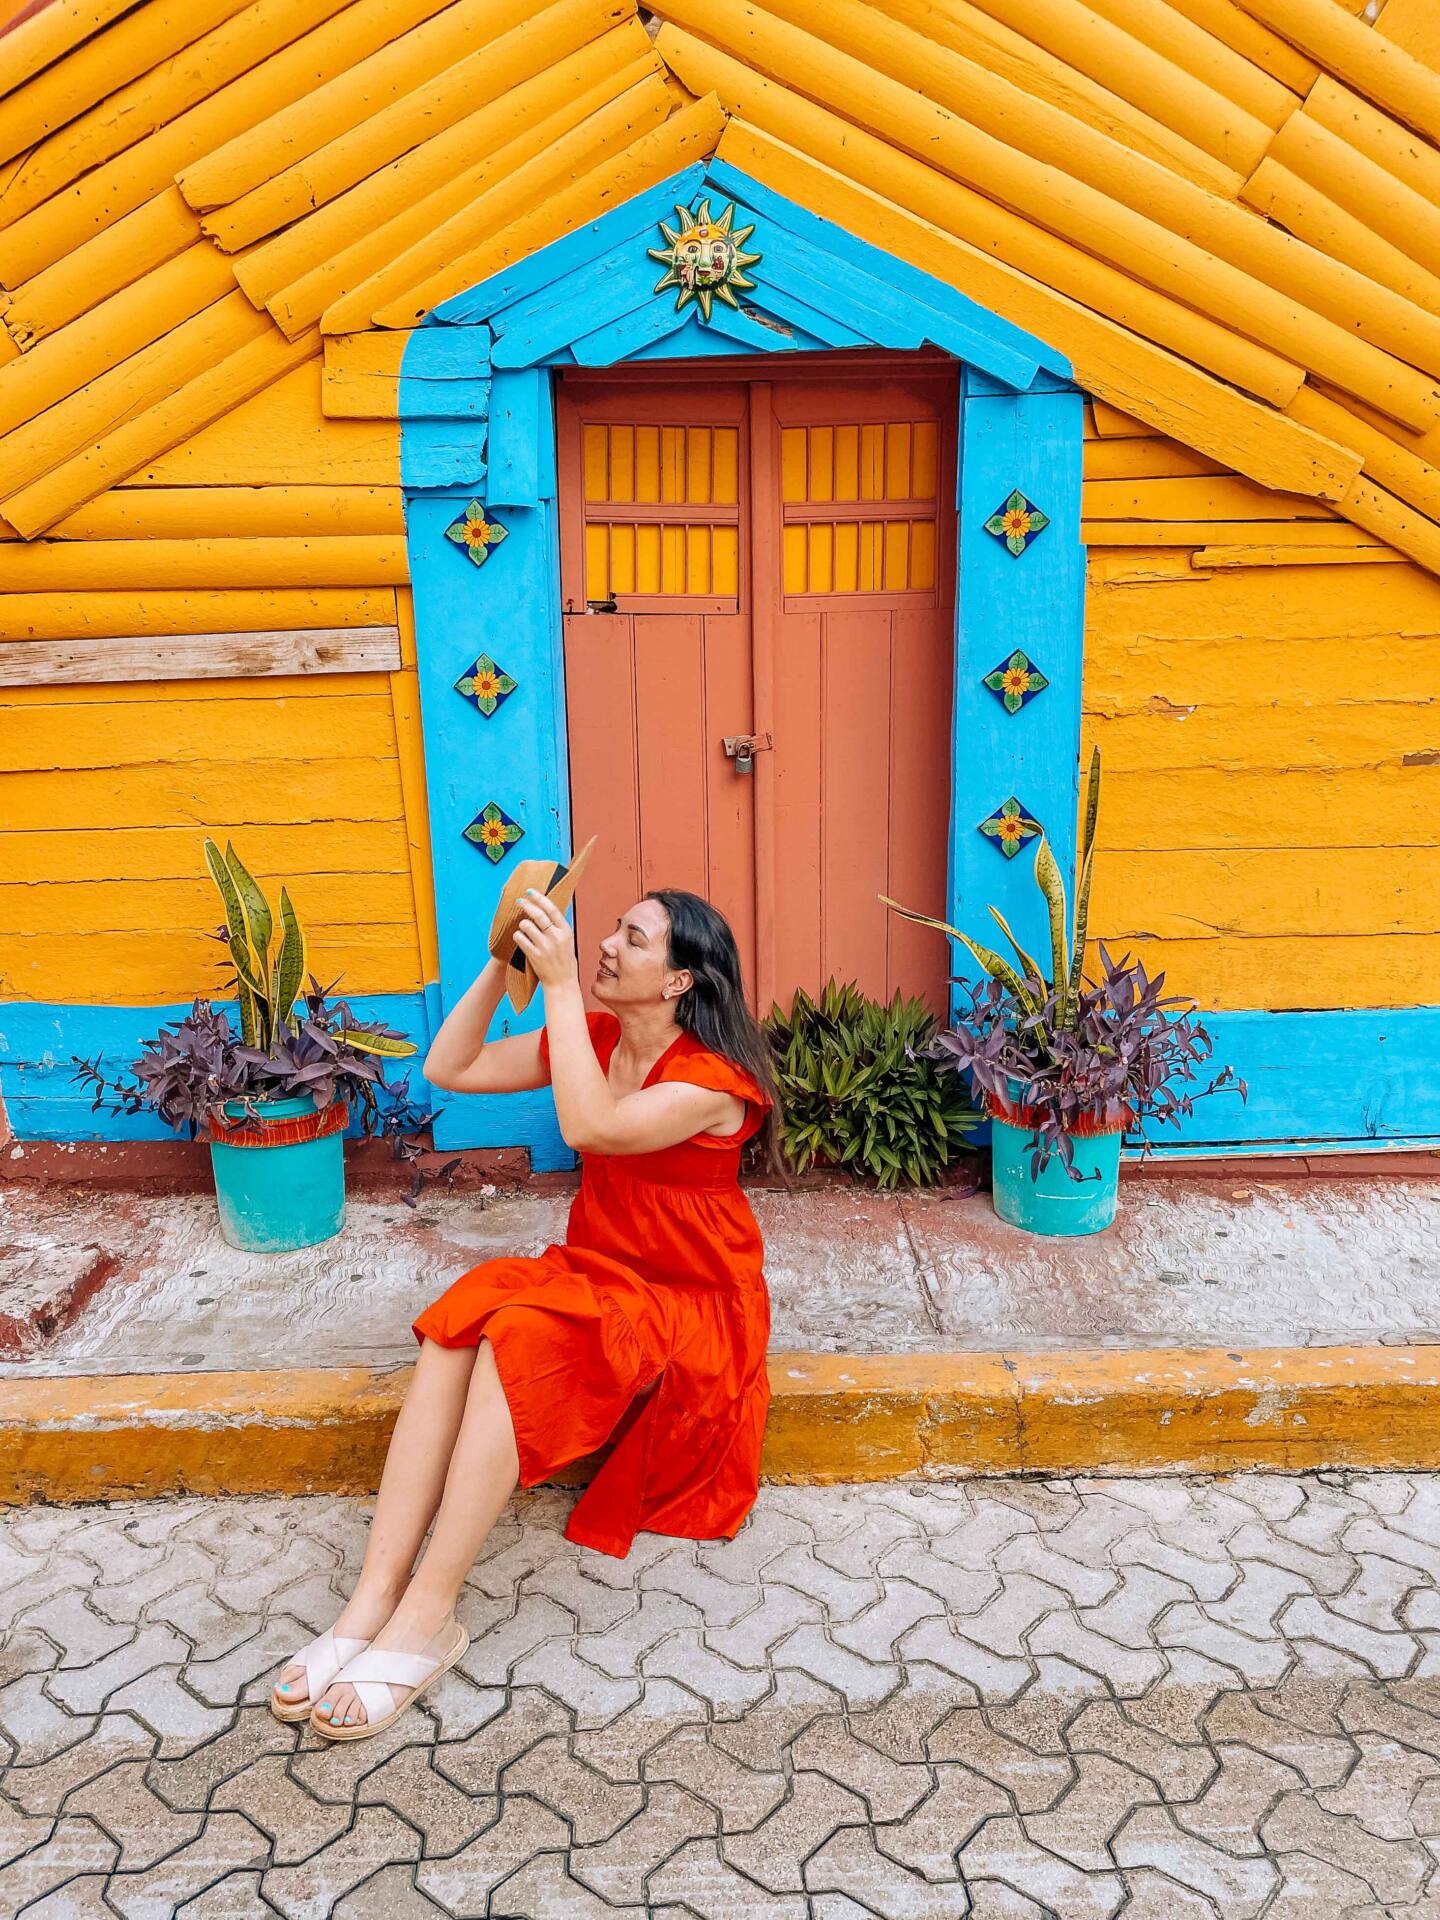 Best Instagram spots in Isla Mujeres in Mexico